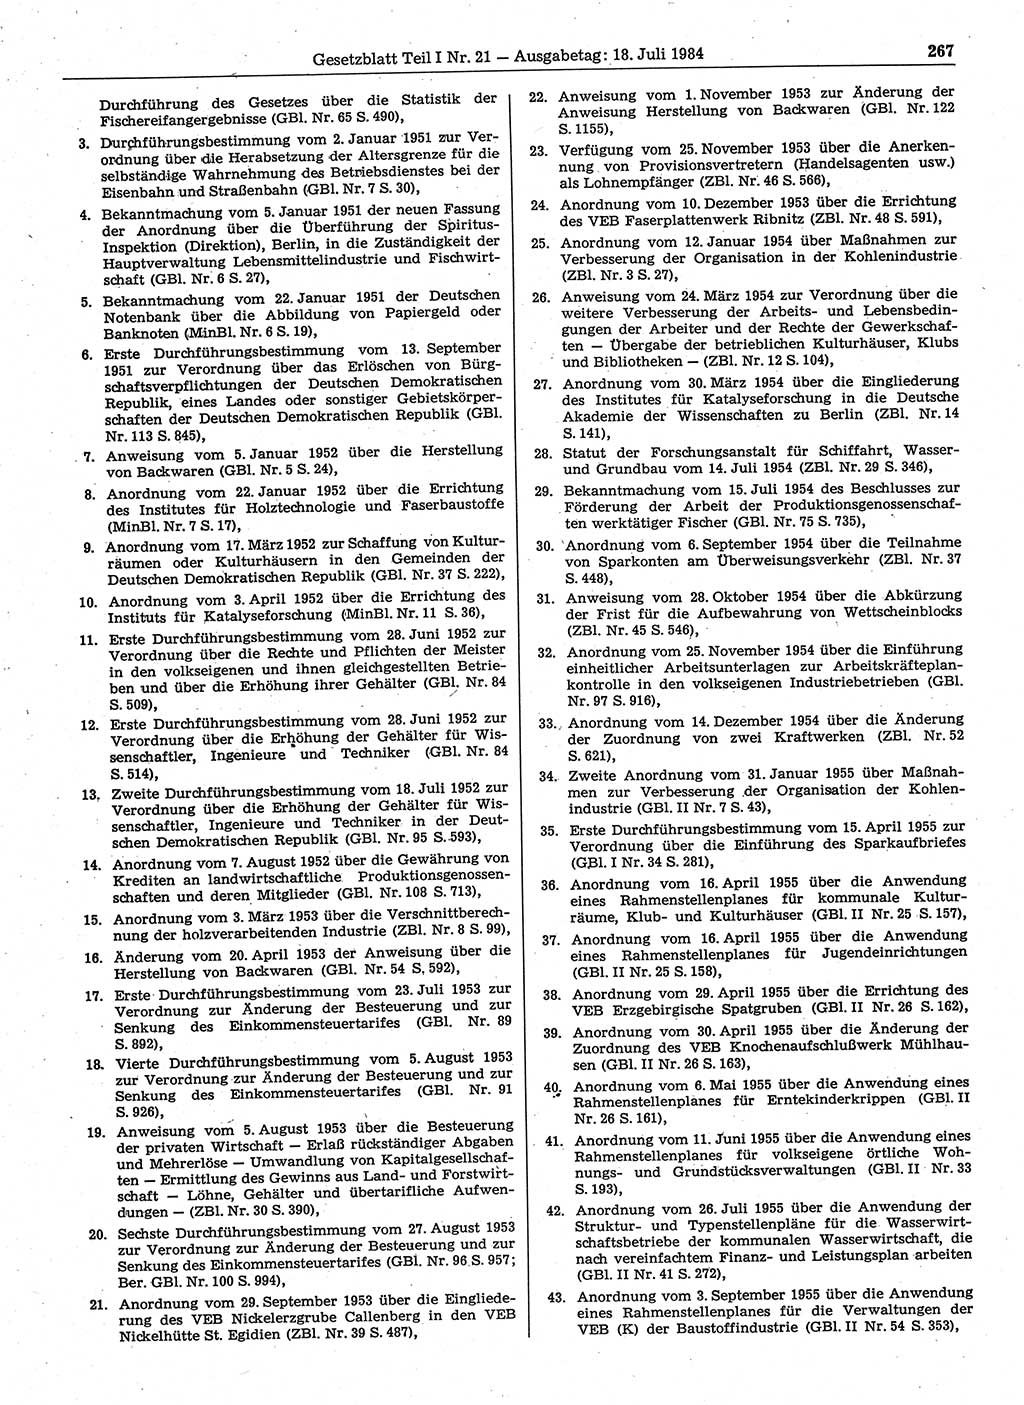 Gesetzblatt (GBl.) der Deutschen Demokratischen Republik (DDR) Teil Ⅰ 1984, Seite 267 (GBl. DDR Ⅰ 1984, S. 267)